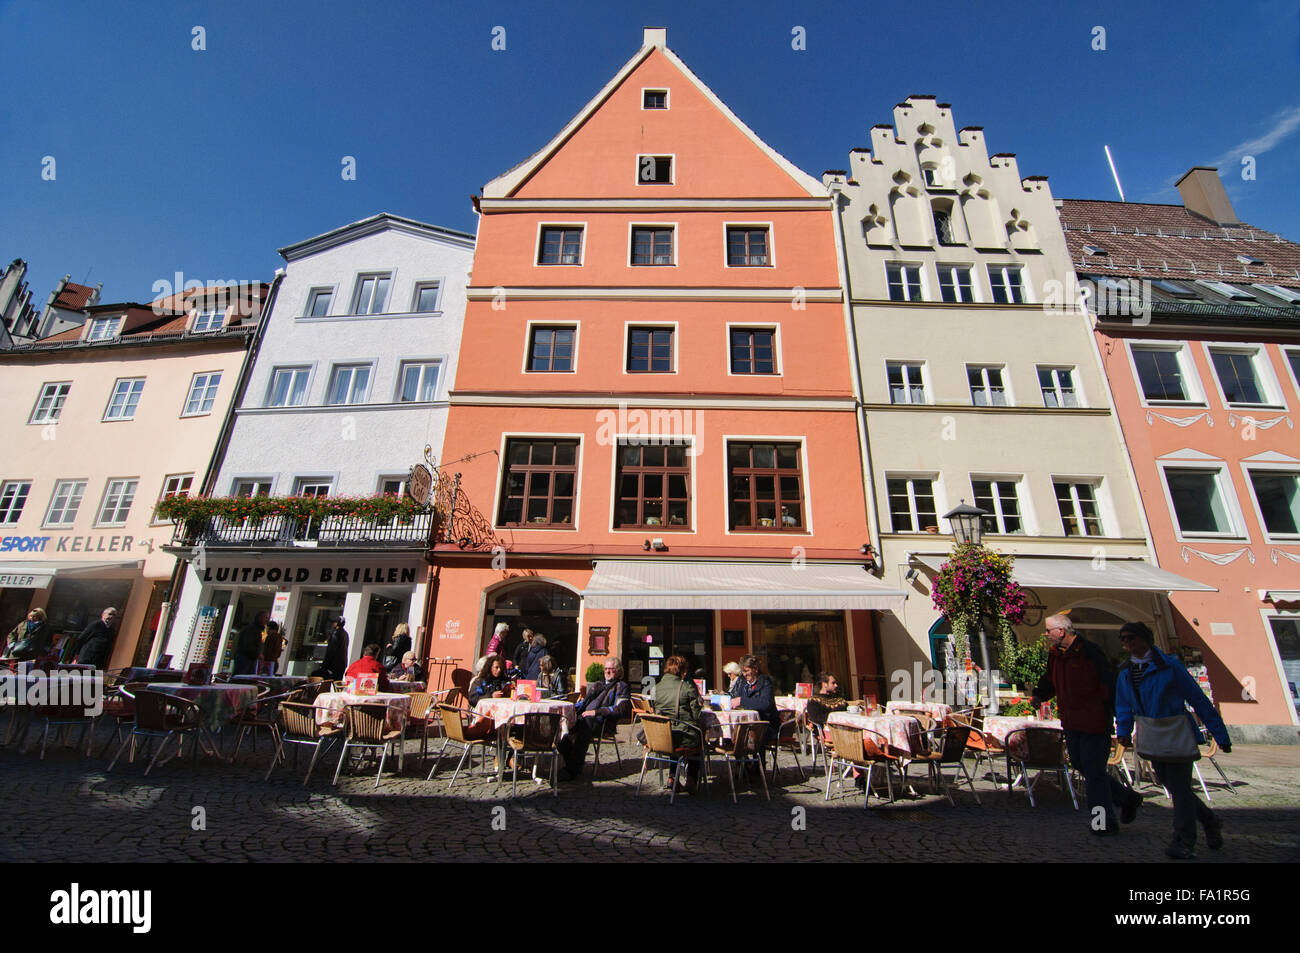 Le scene nel centro della città vecchia di Fussen, Germania Foto Stock